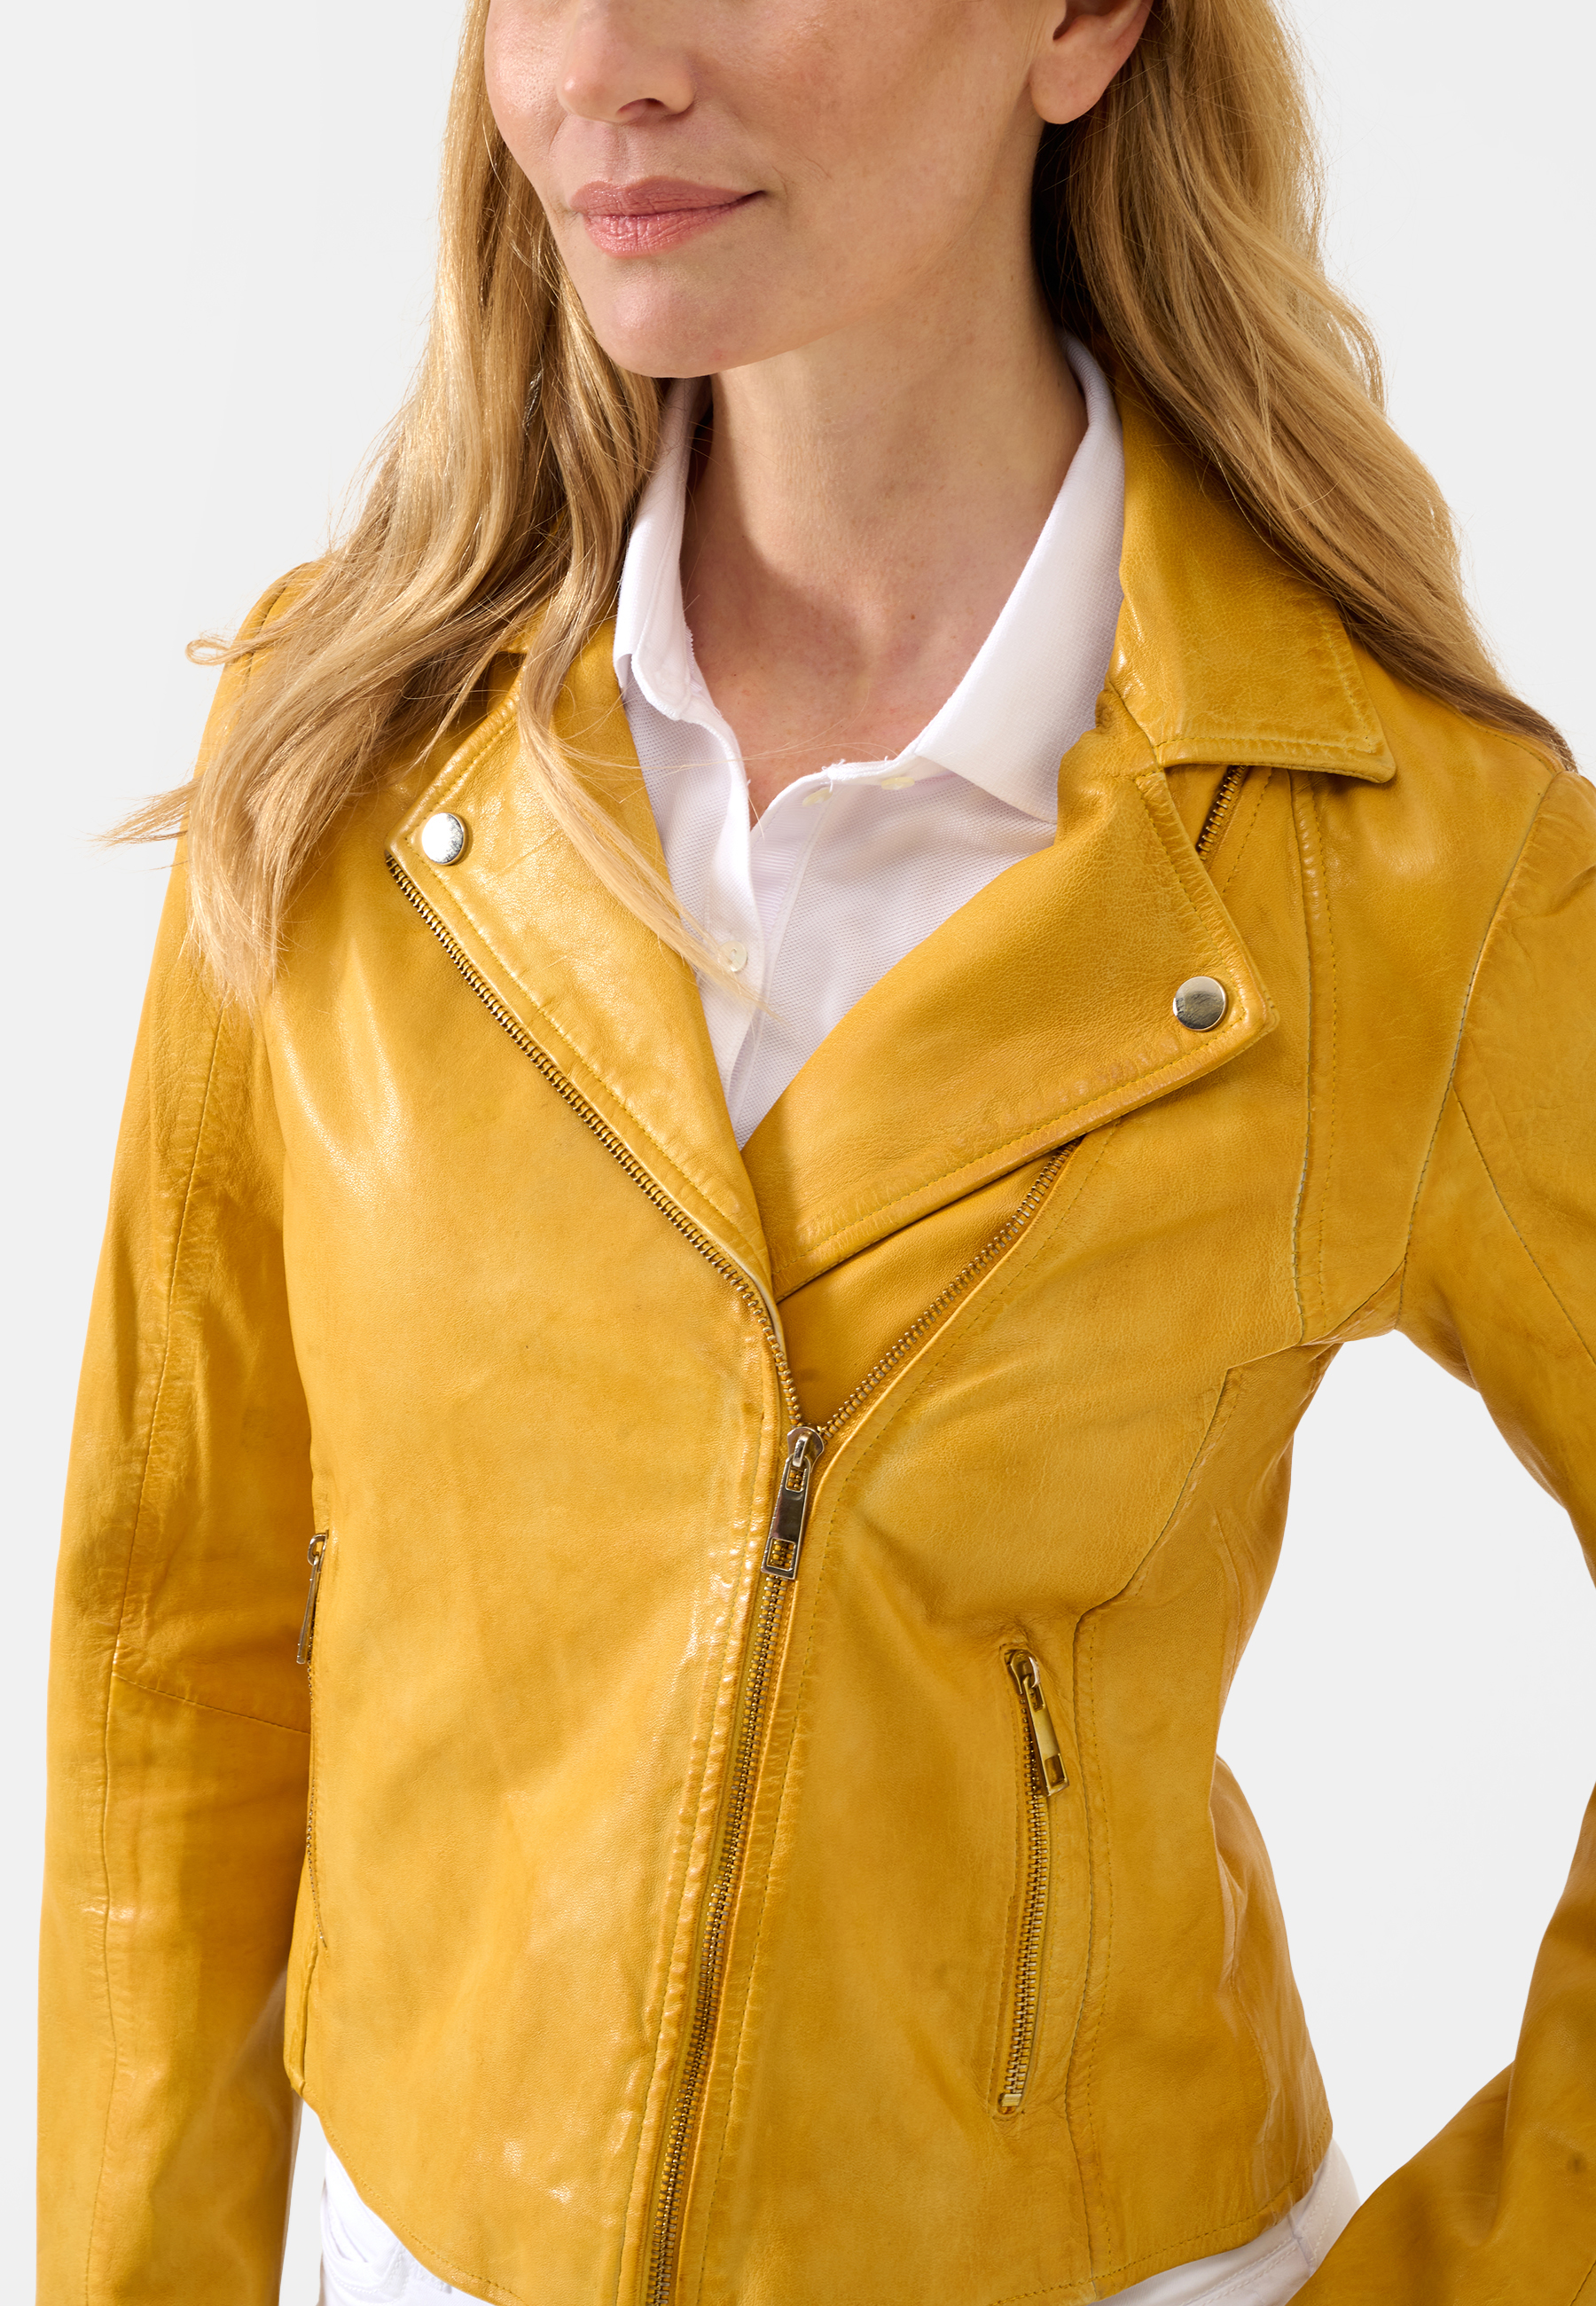 Damen Lederjacke Antonia in Gelb von Ricano, Detailansicht der Seitentasche Reißverschluss am Model